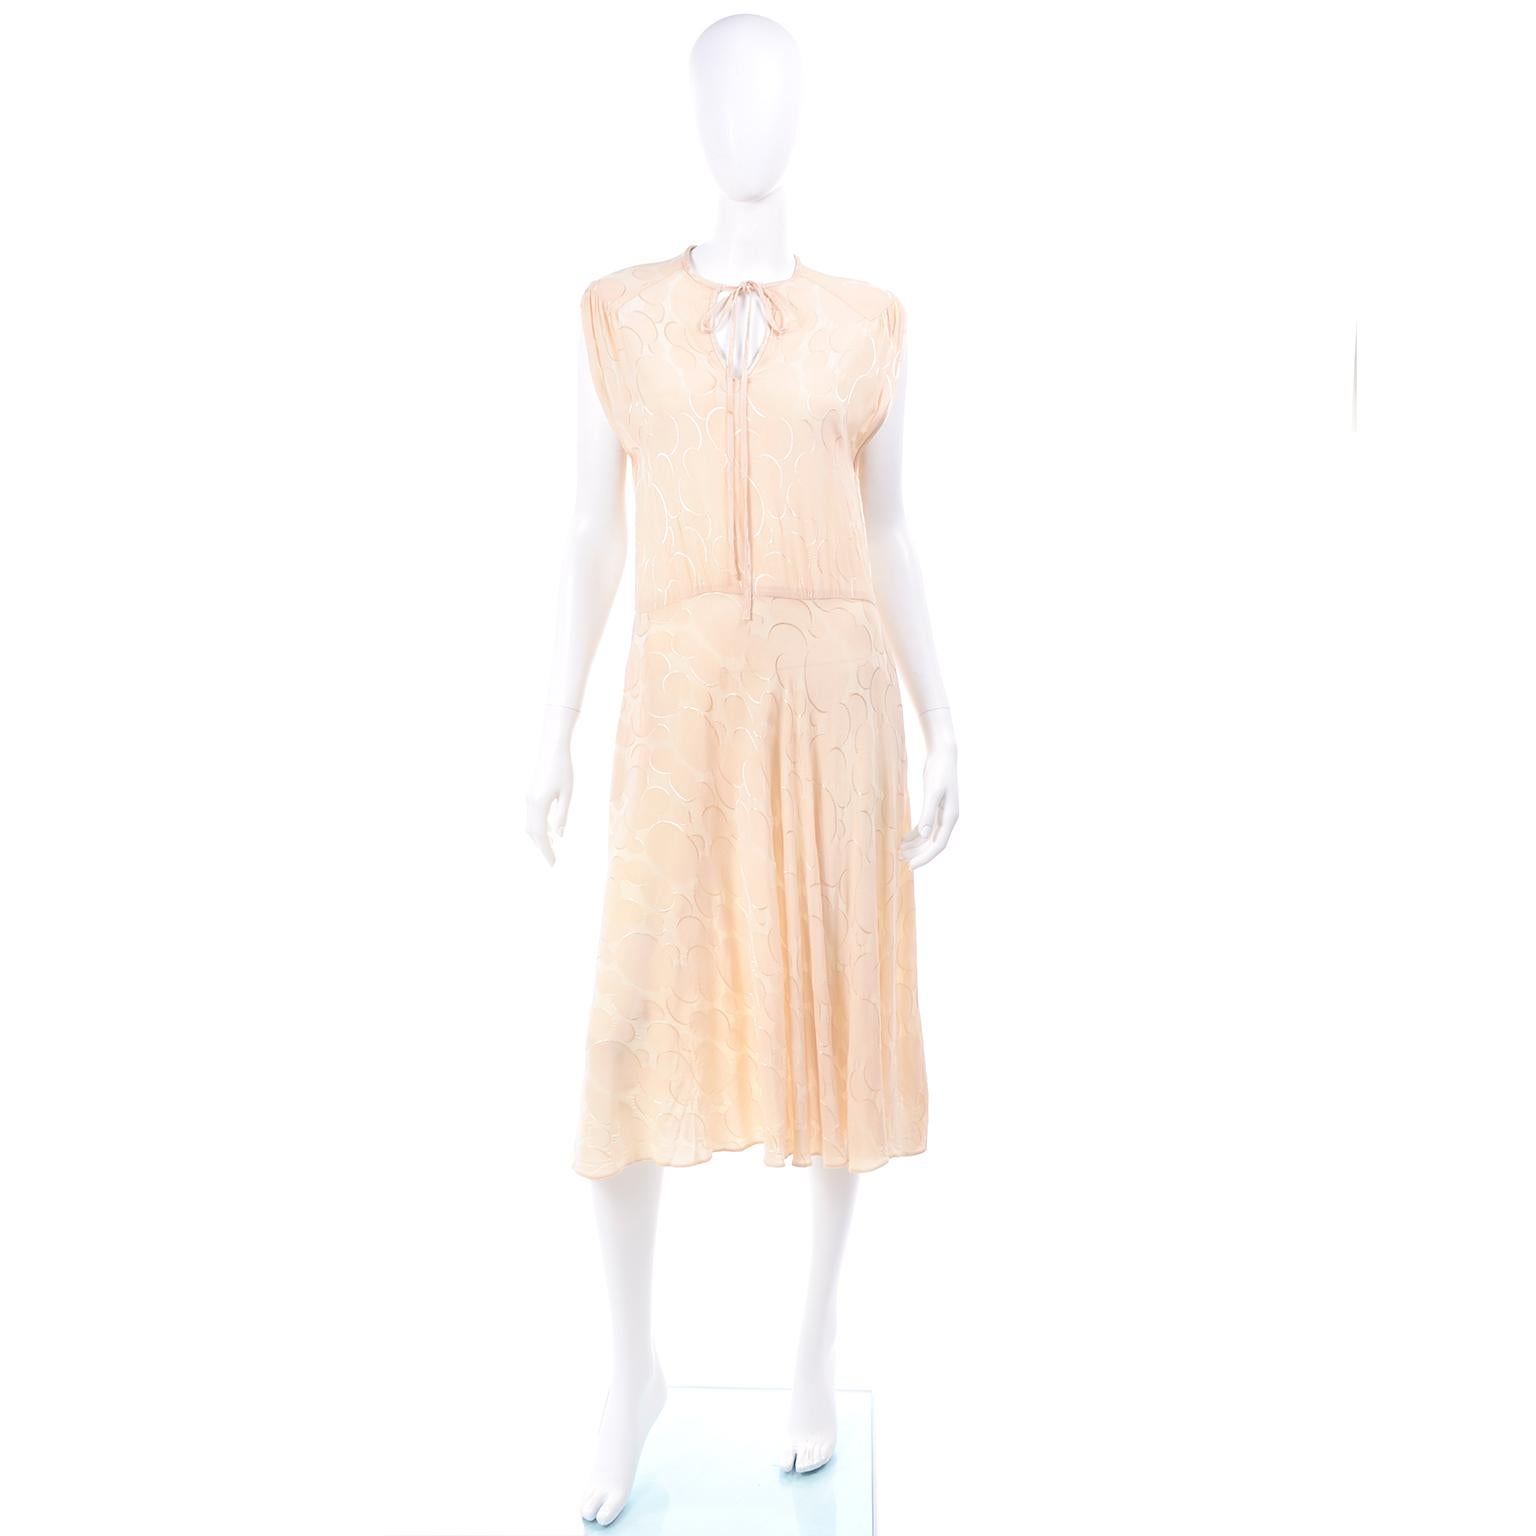 Voici une robe vintage des années 1970 d'Albert Nipon en soie imprimée de cercles ton sur ton. Cette robe taille basse des années 70 a des poches et le tissu bouge vraiment avec votre corps et est si facile à porter !  L'impression se trouve en fait